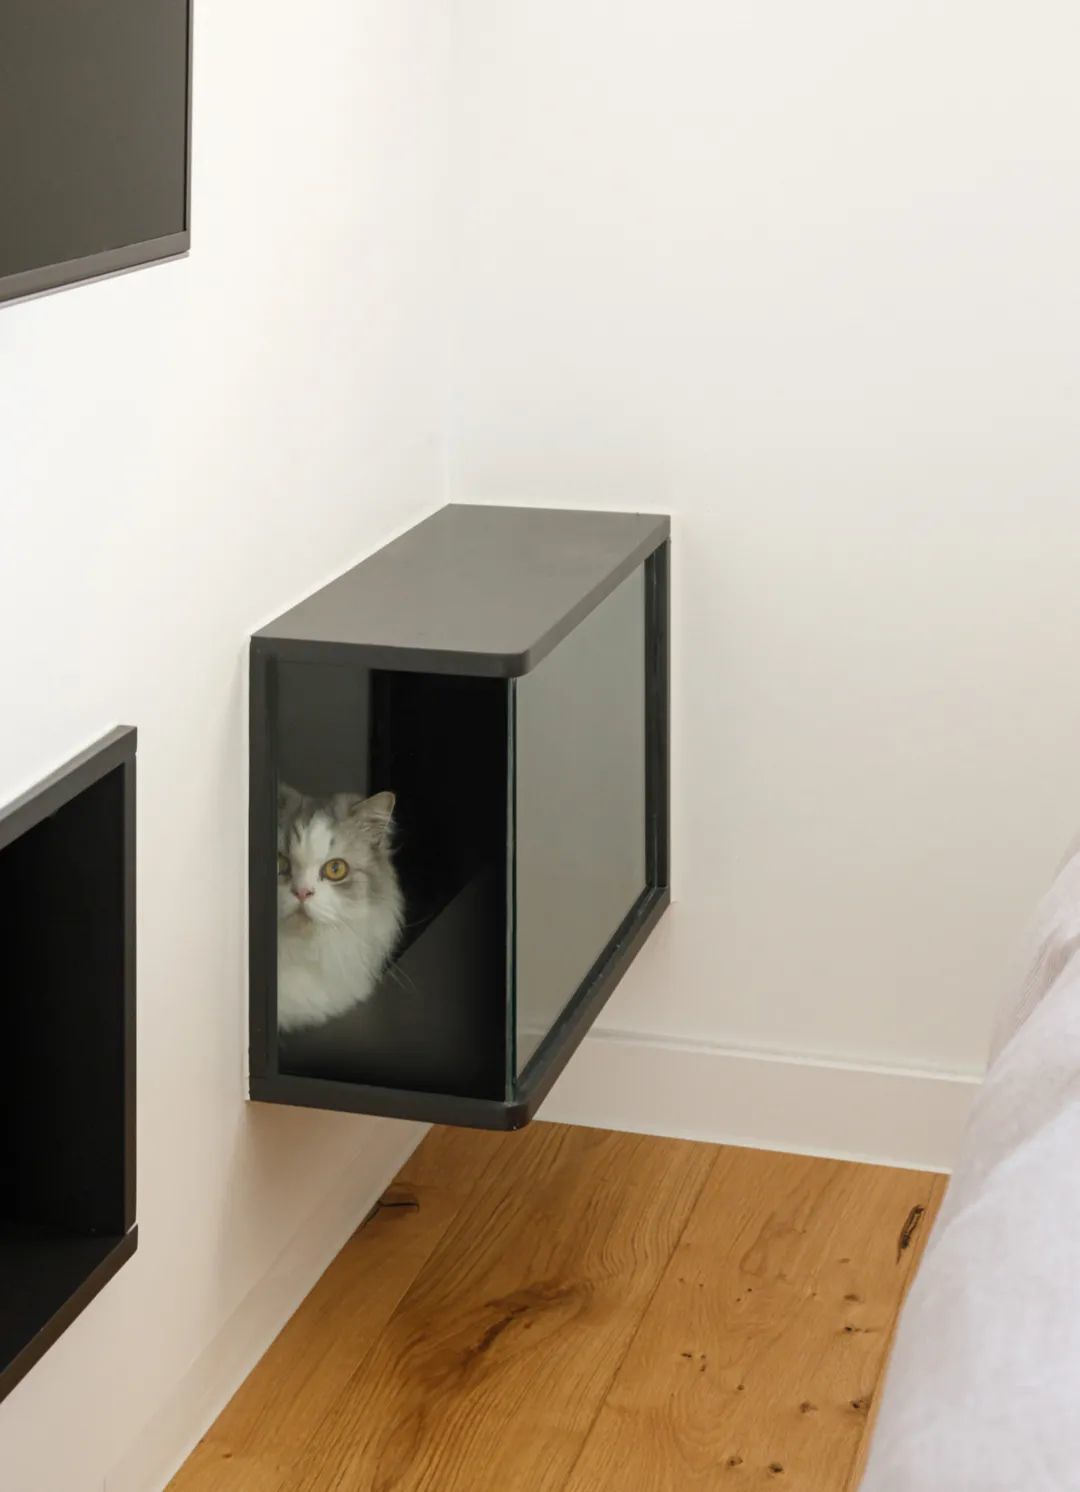   电视柜上的猫洞是直接连通主卧的，晚上即便关着门，两只猫咪不进入卧室内部，也能通过电视墙“进入”主卧巡查。